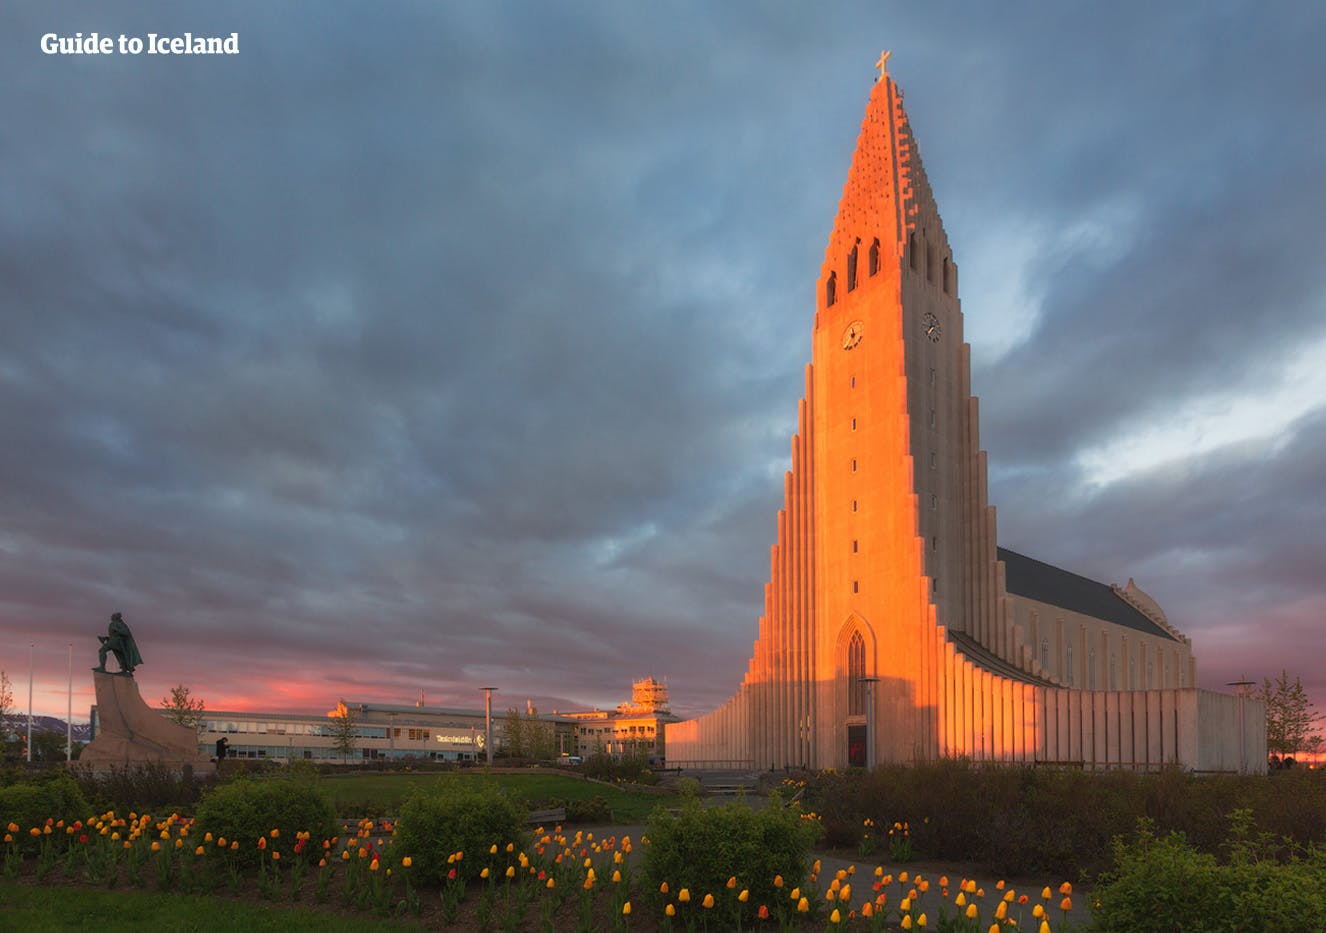 L'edificio simbolo di Reykjavík, la chiesa Hallgrímskirkja, illuminata dai raggi del sole di mezzanotte.